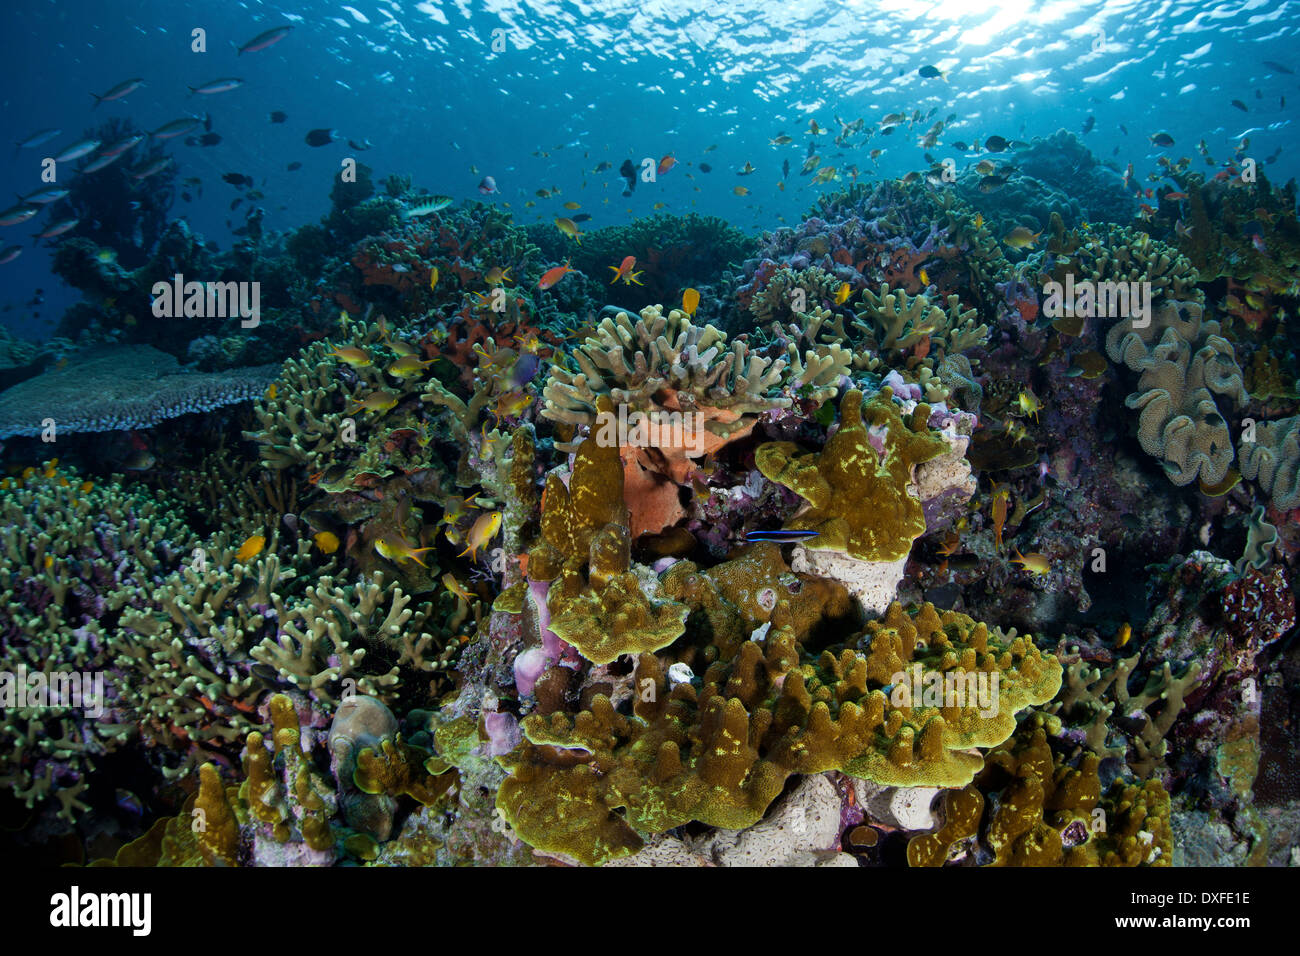 Arrecifes de Coral sanos, Acropora sp., Melanesia, el Océano Pacífico, las Islas Salomón Foto de stock